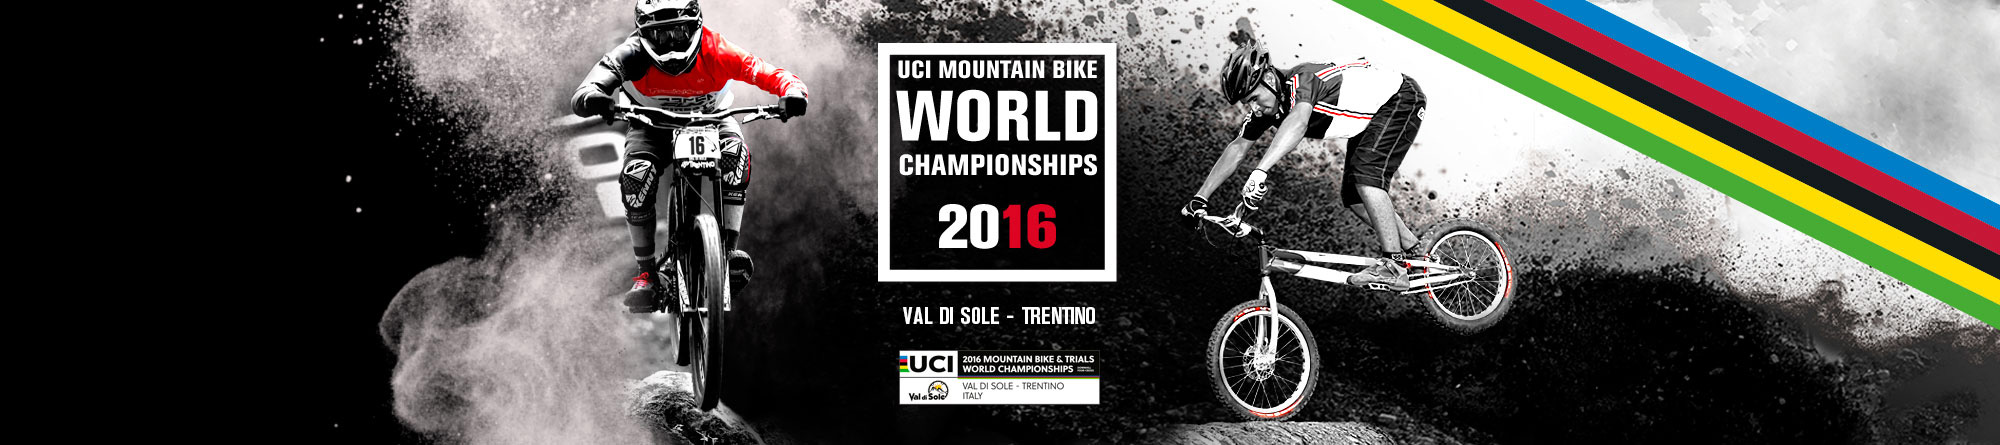 Trials- World Champs MTB 2016